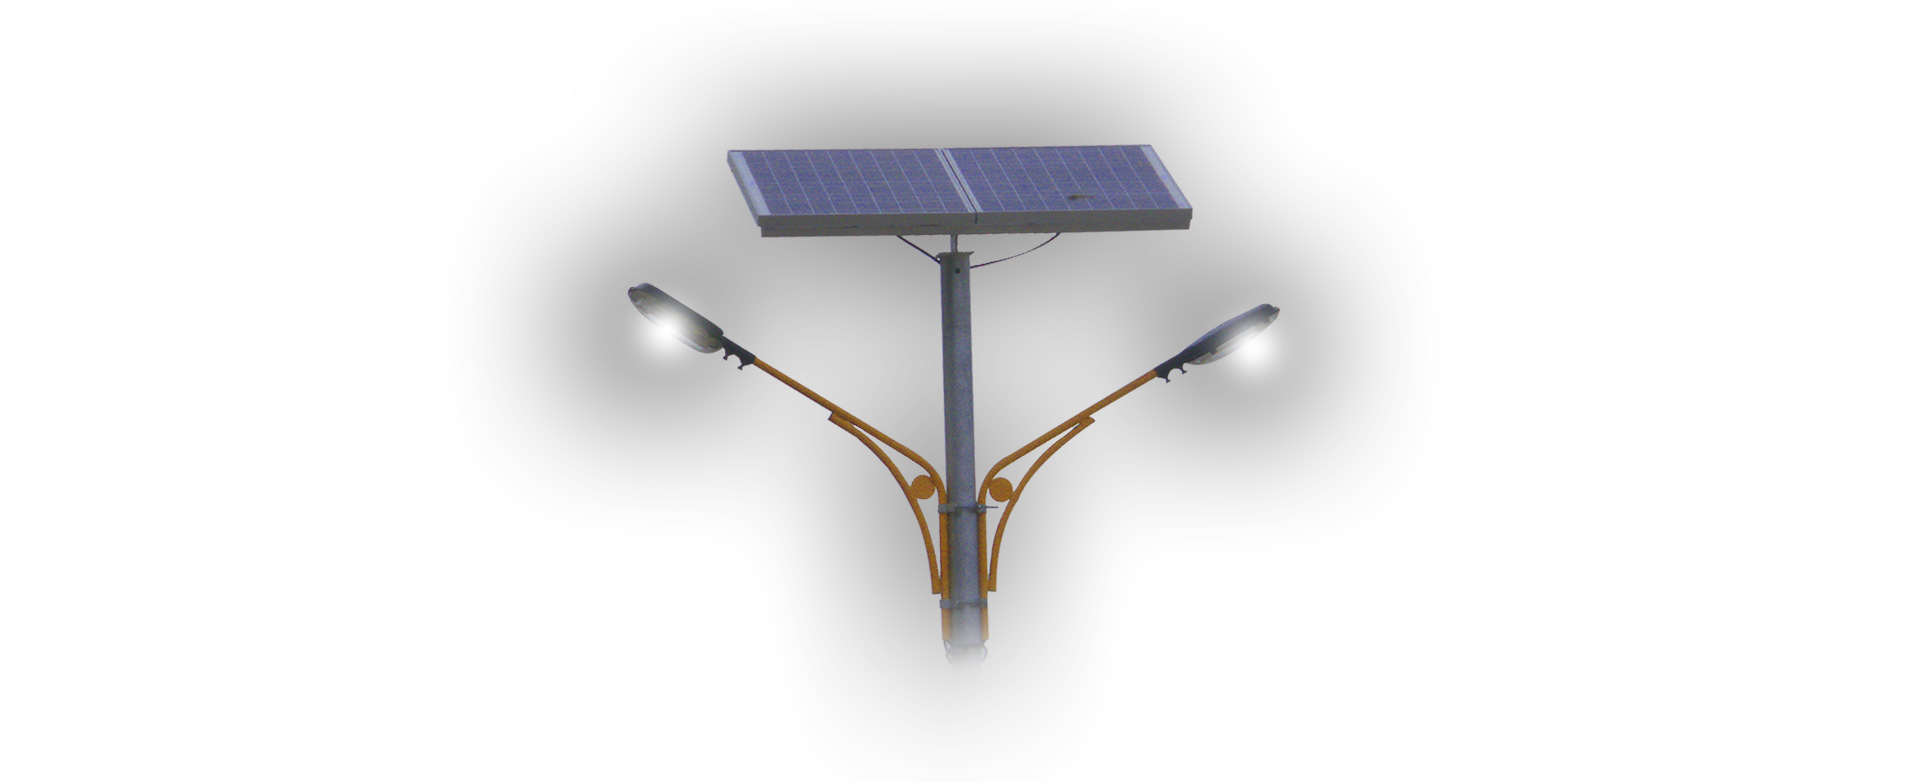 vesat solar lighting system